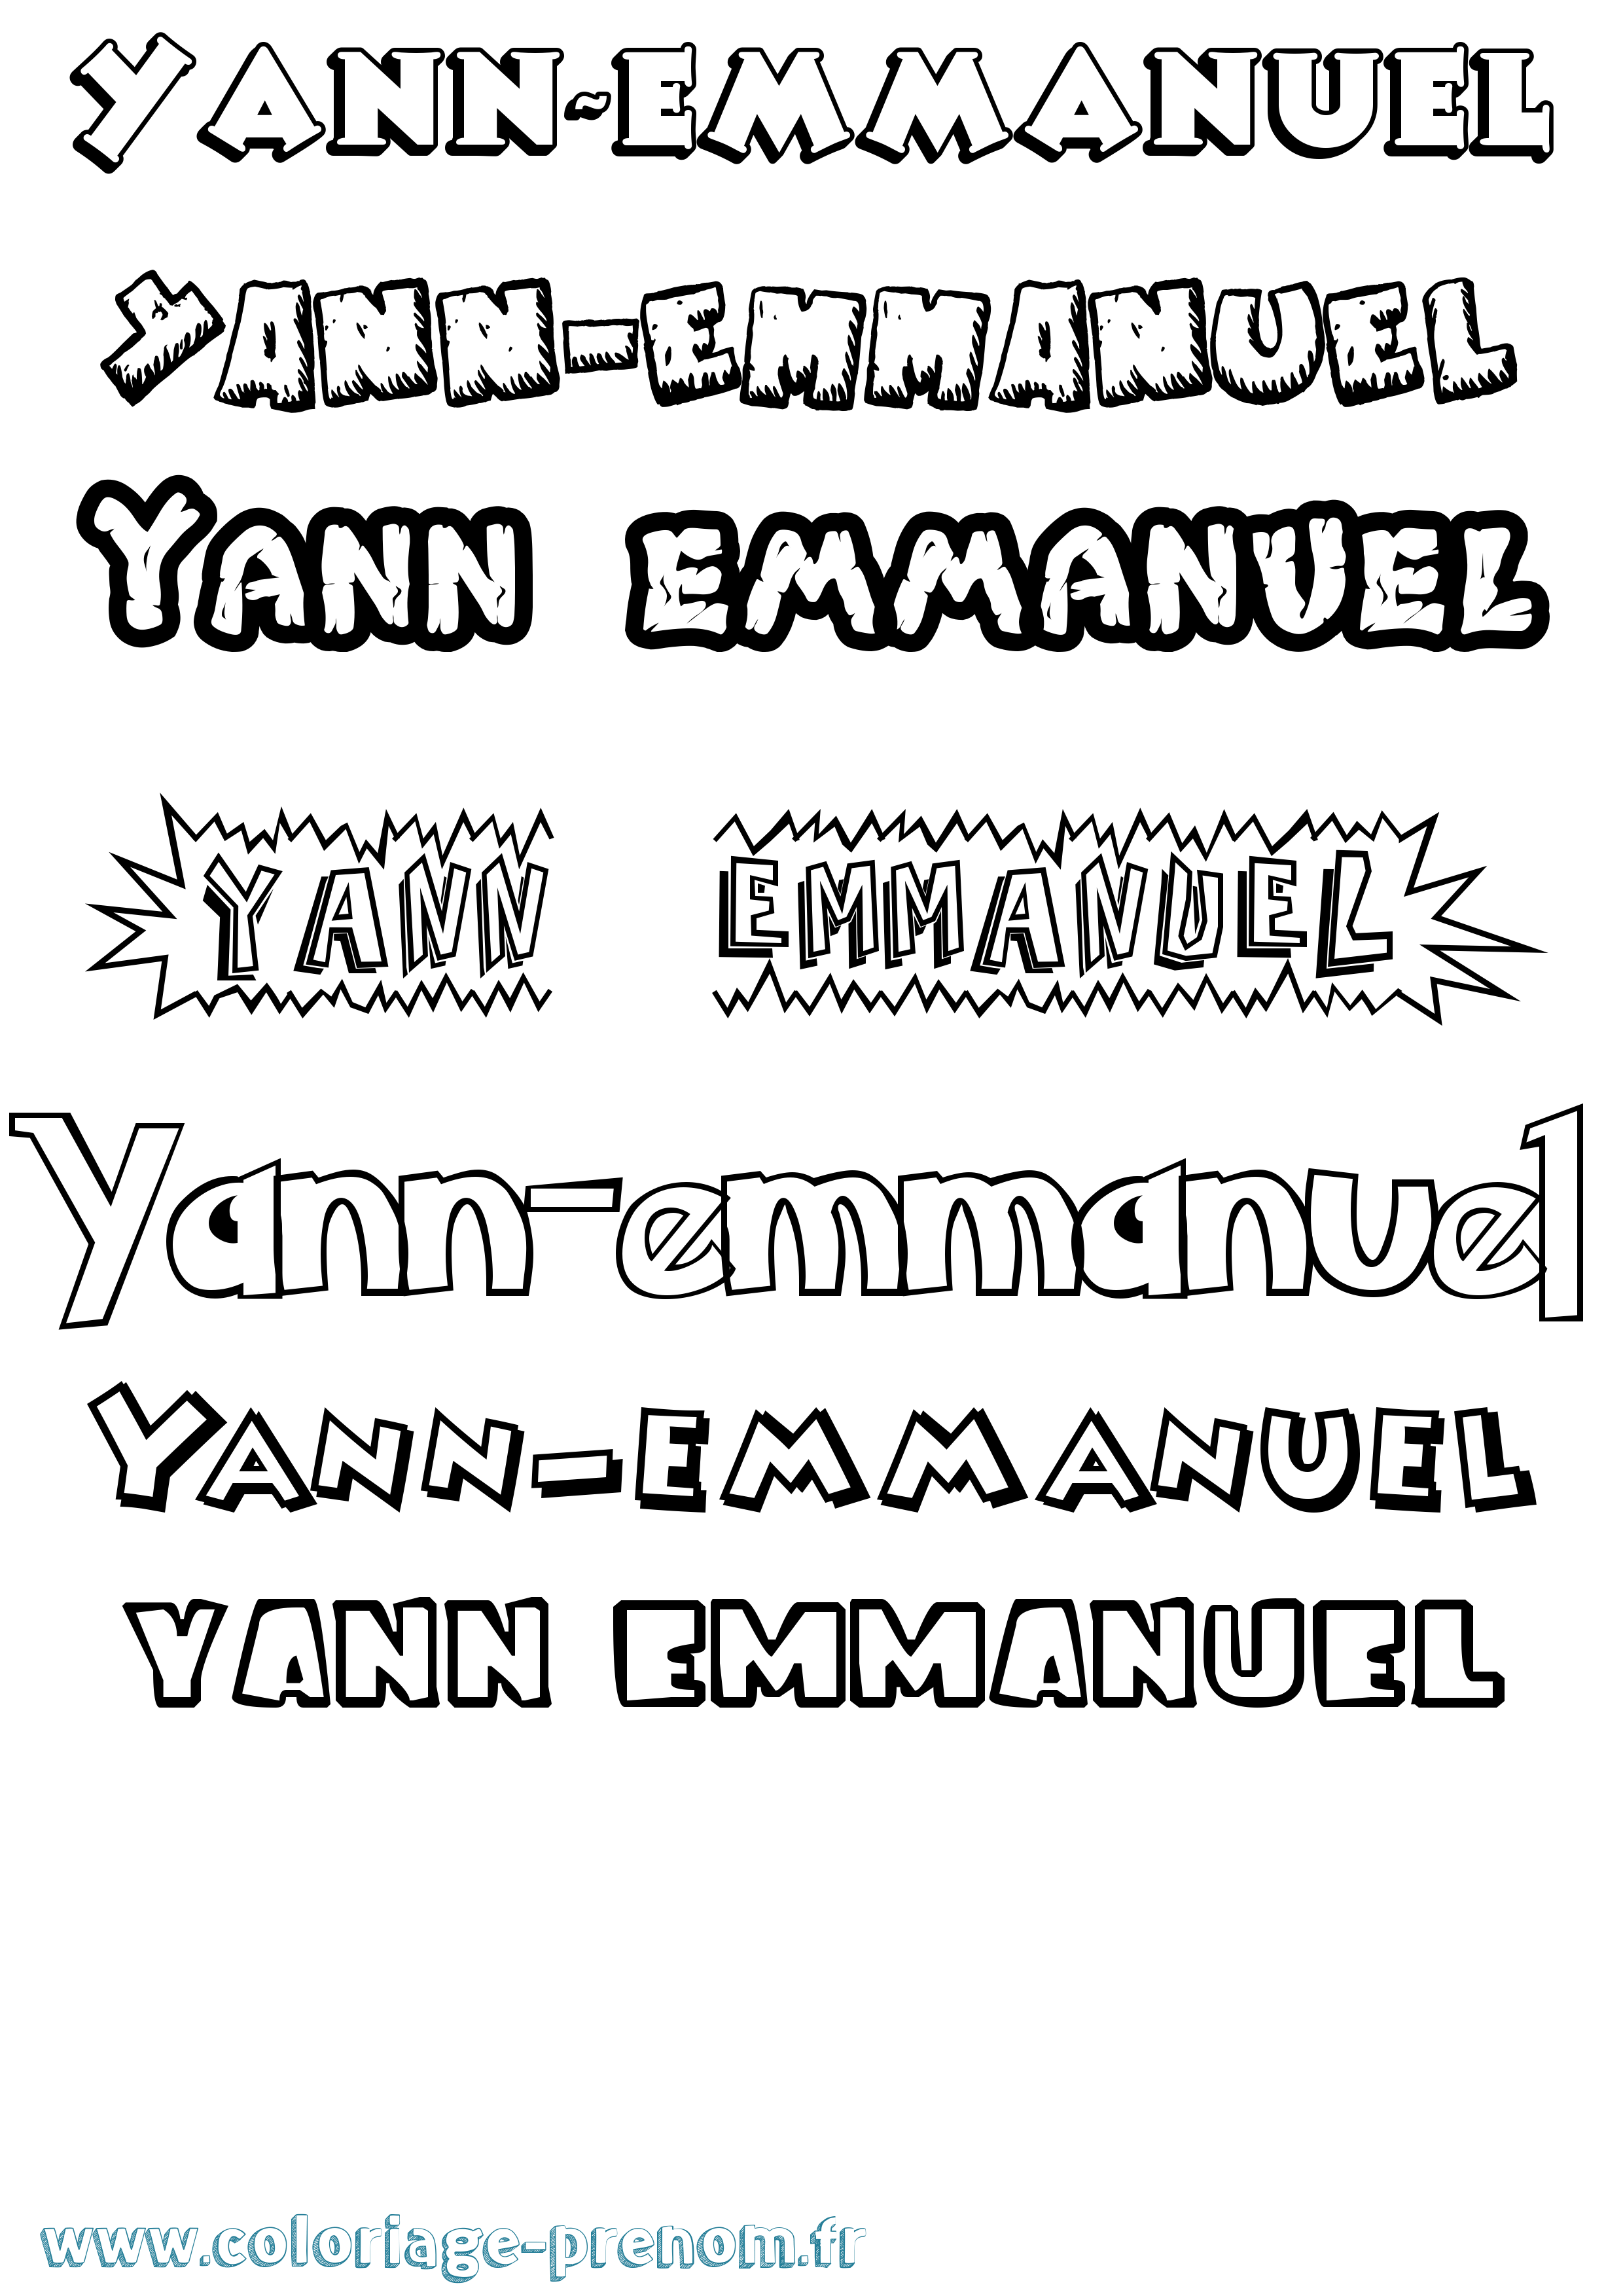 Coloriage prénom Yann-Emmanuel Dessin Animé